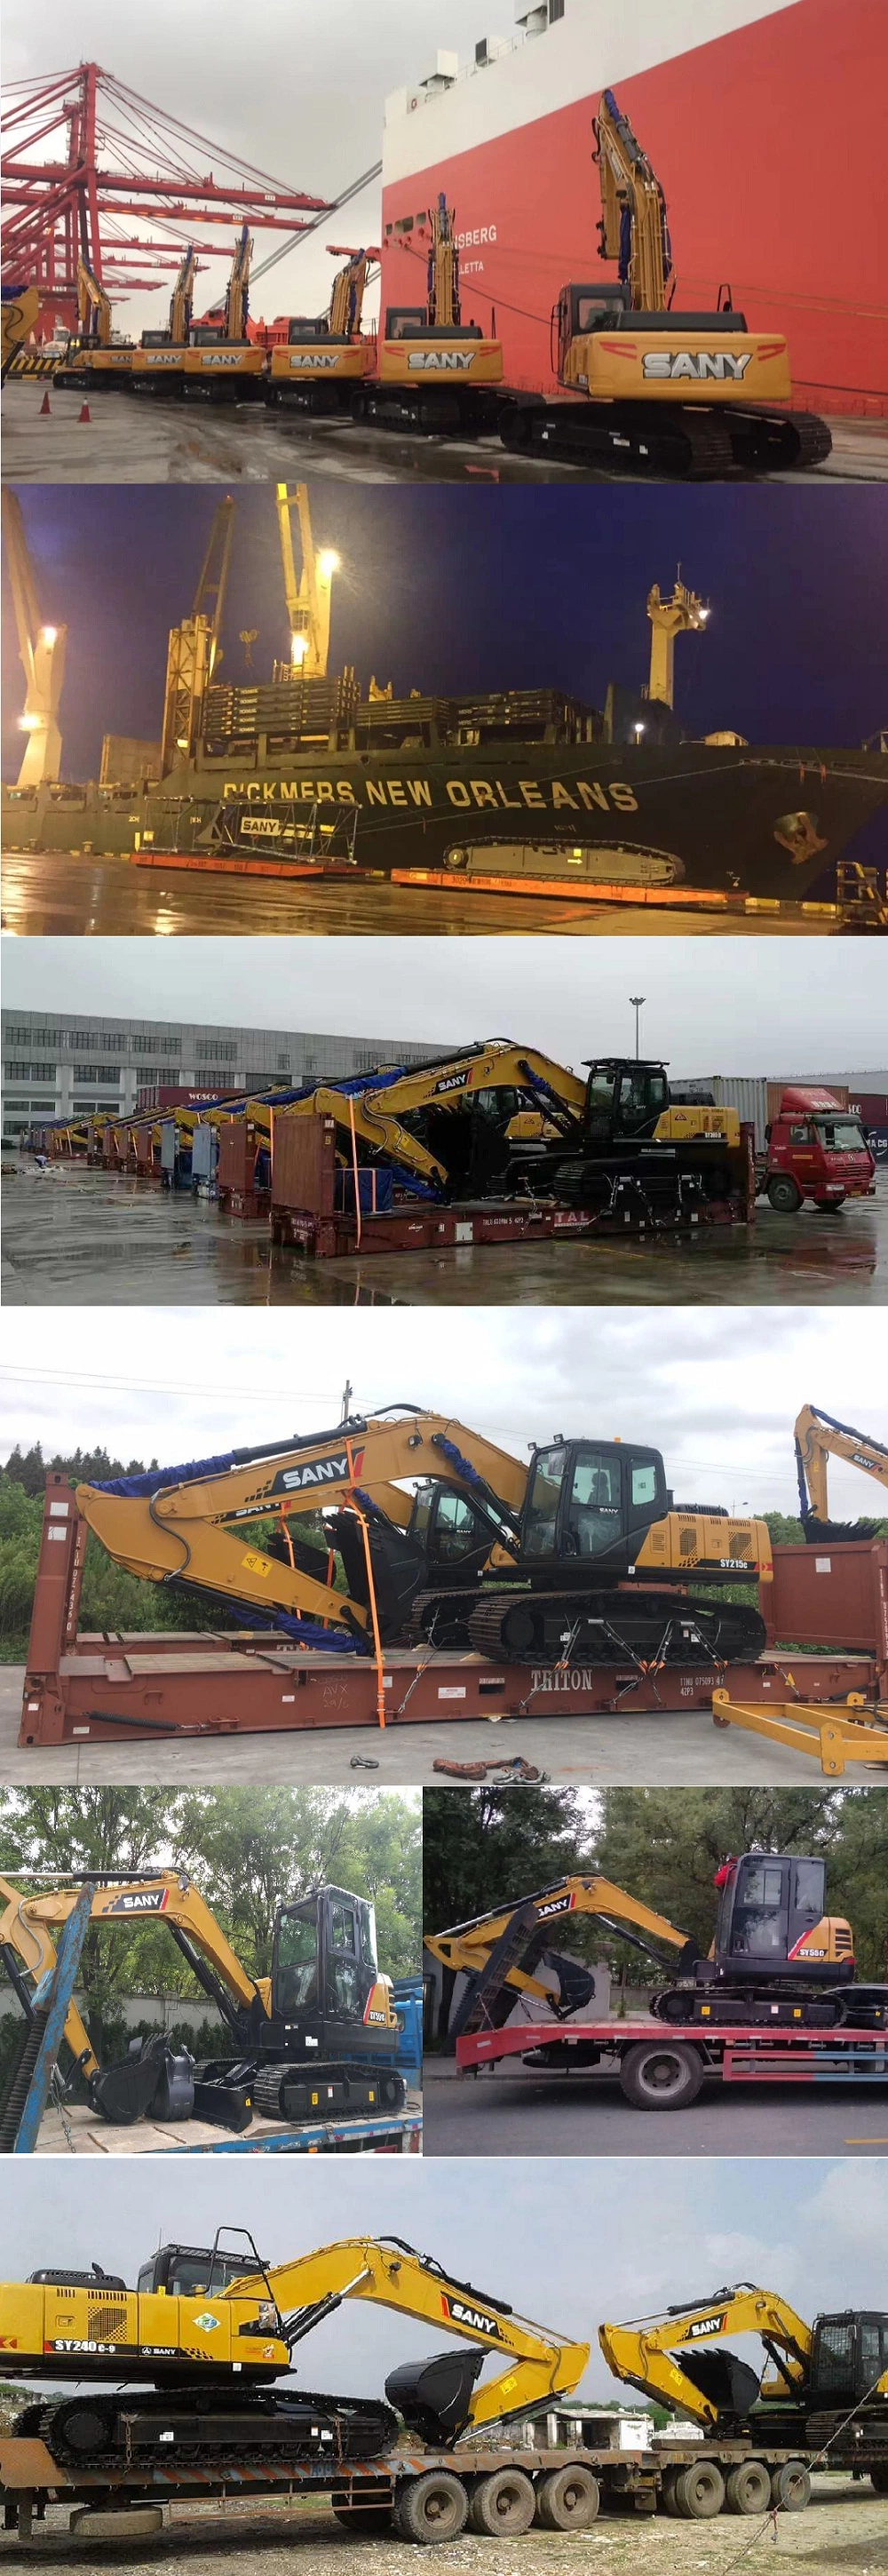 Sany Sy215c Mining Construction Machinery Medium Tracked Crawler Large Excavator